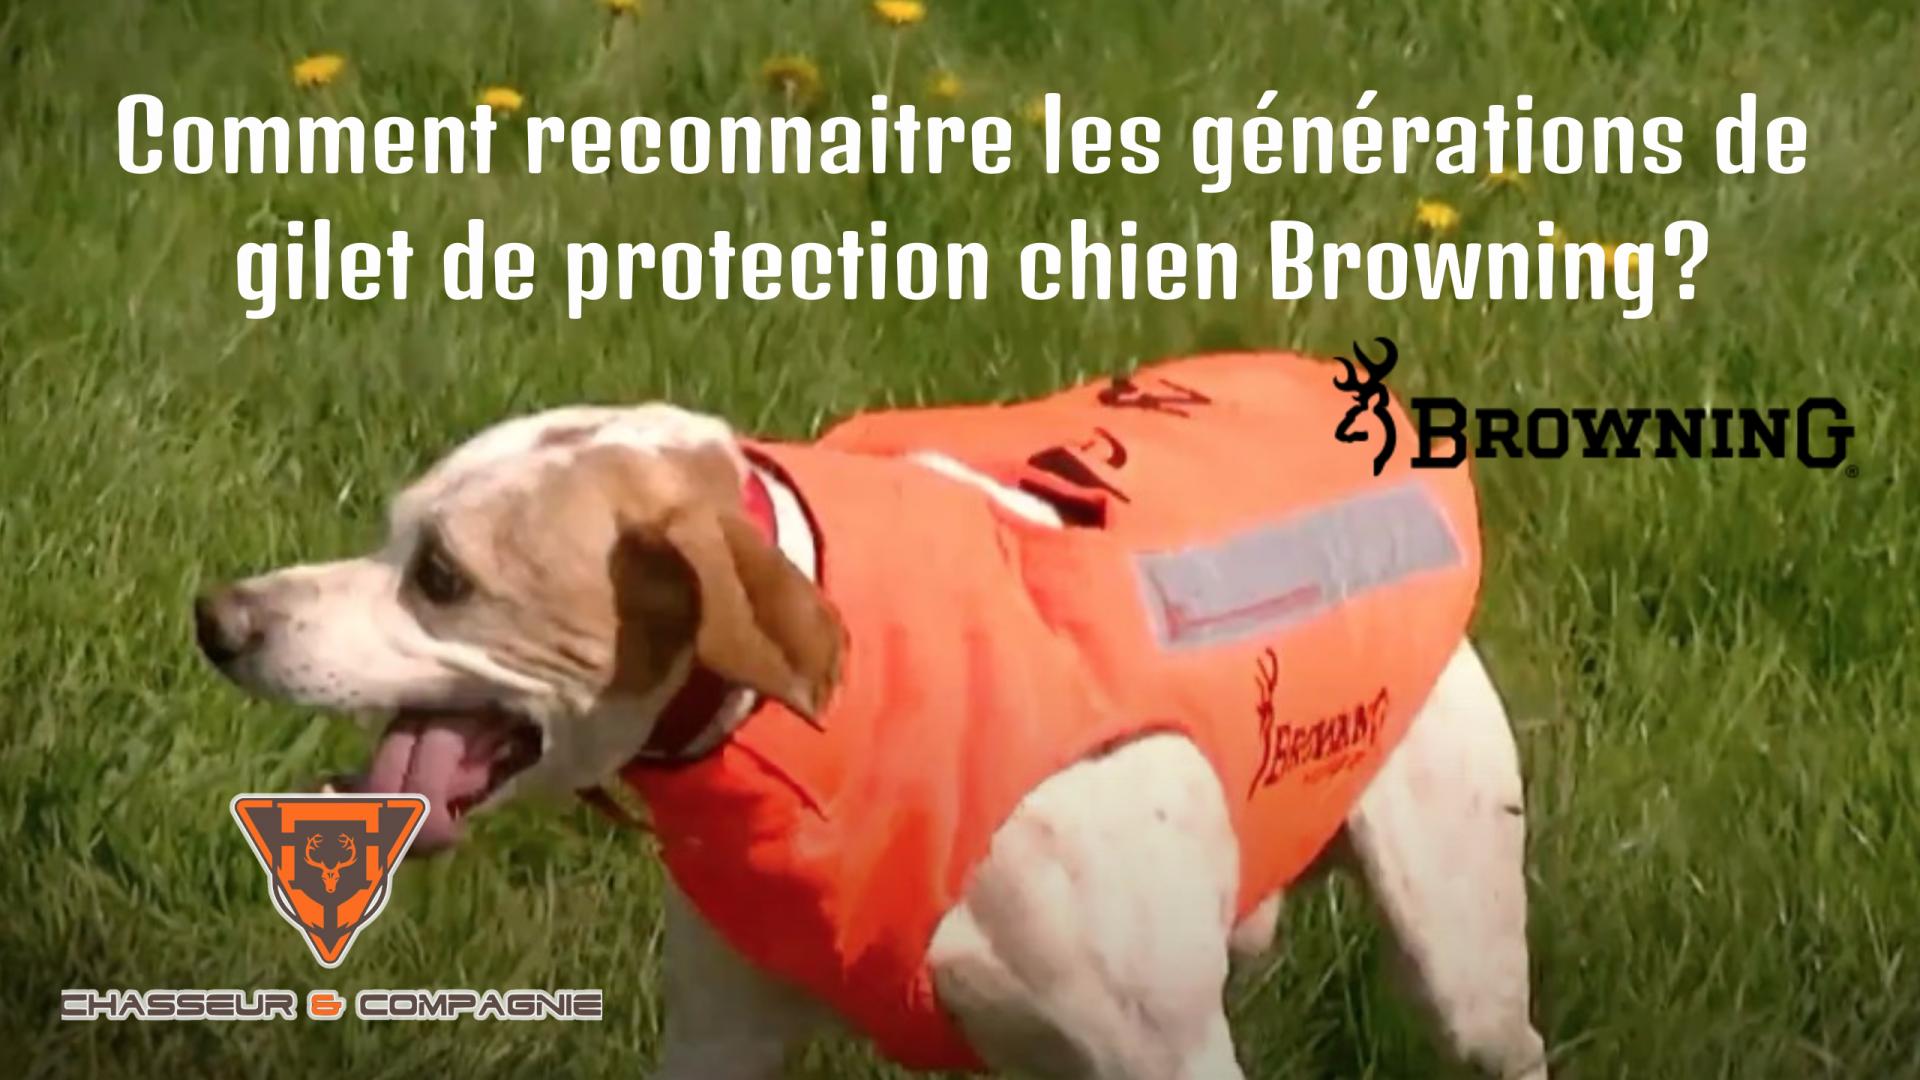 Comment reconnaitre les generations de gilet de protection chien browning